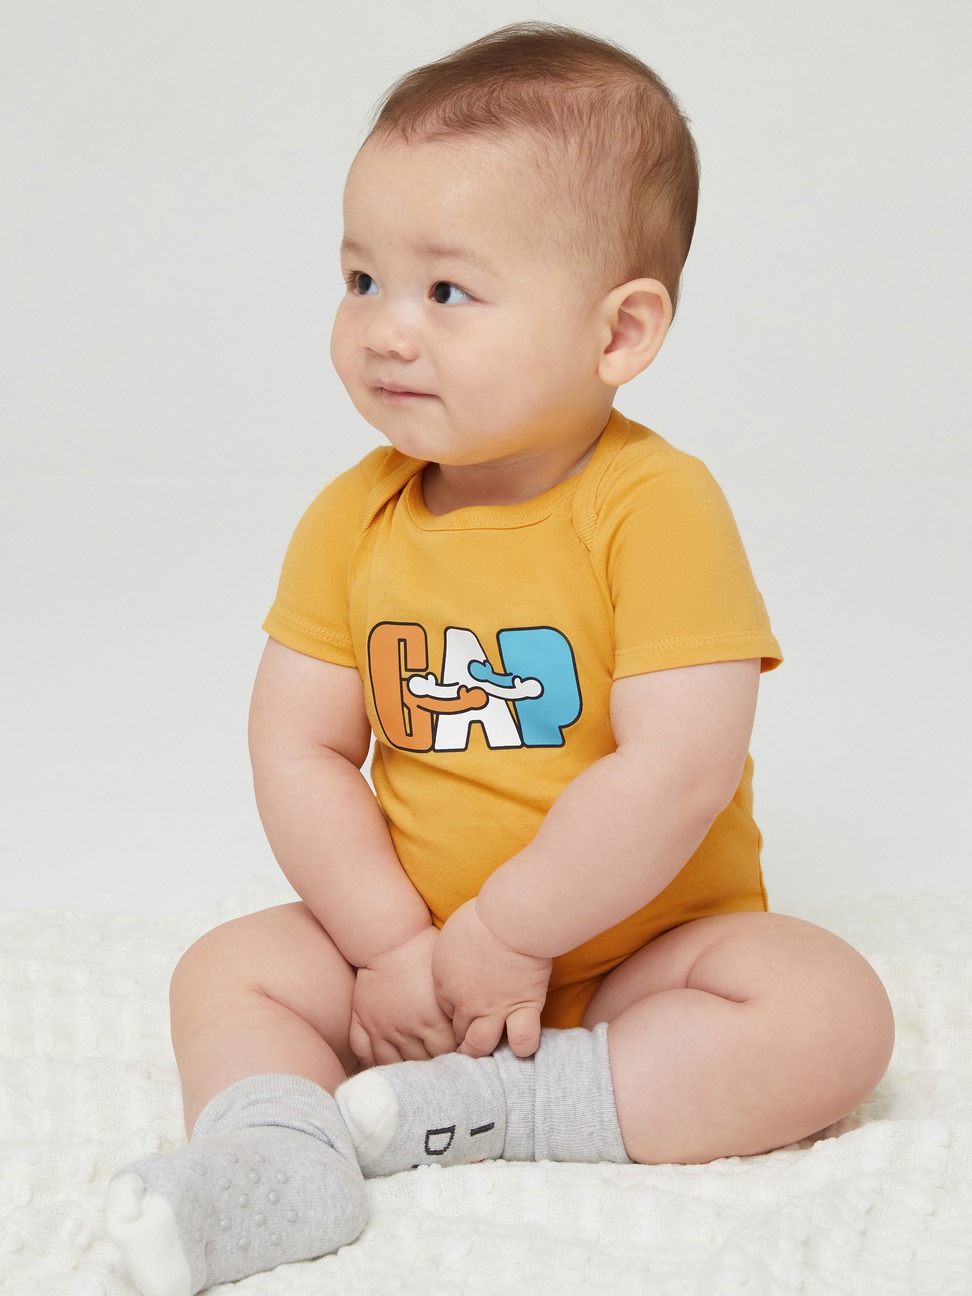 嬰兒裝|Gap x Ken Lo藝術家聯名 純棉印花包屁衣-金黃色